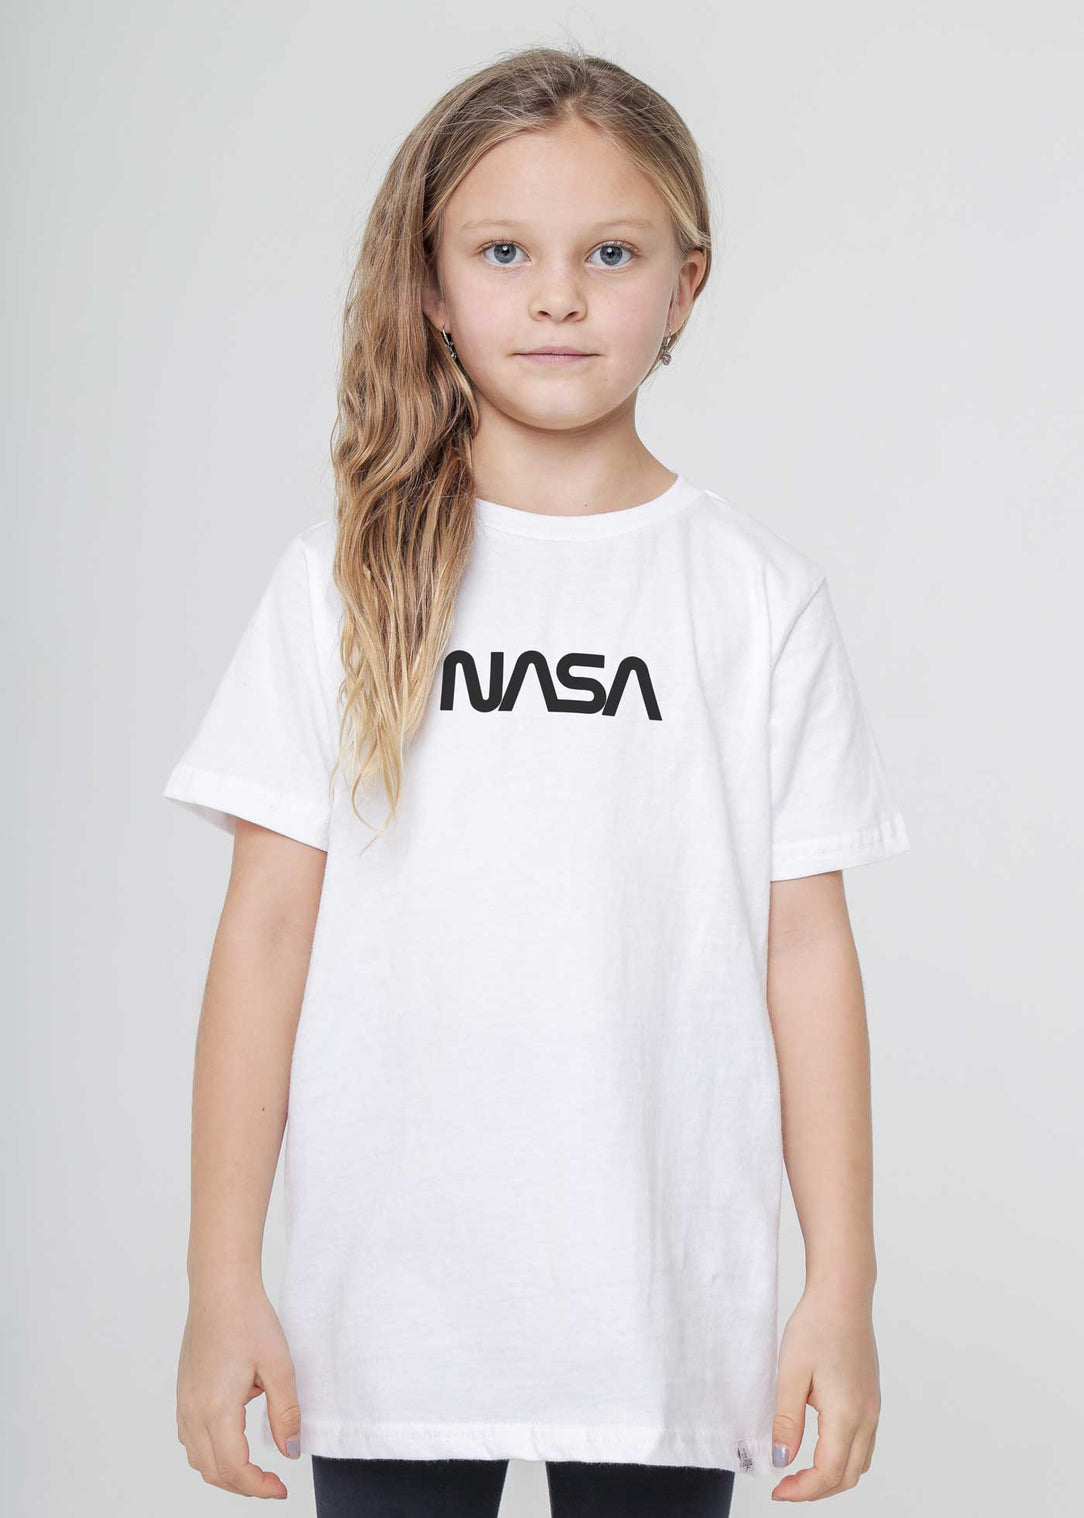 NASA Voyage Badge Kid\'s White T-Shirt — Kid Dangerous